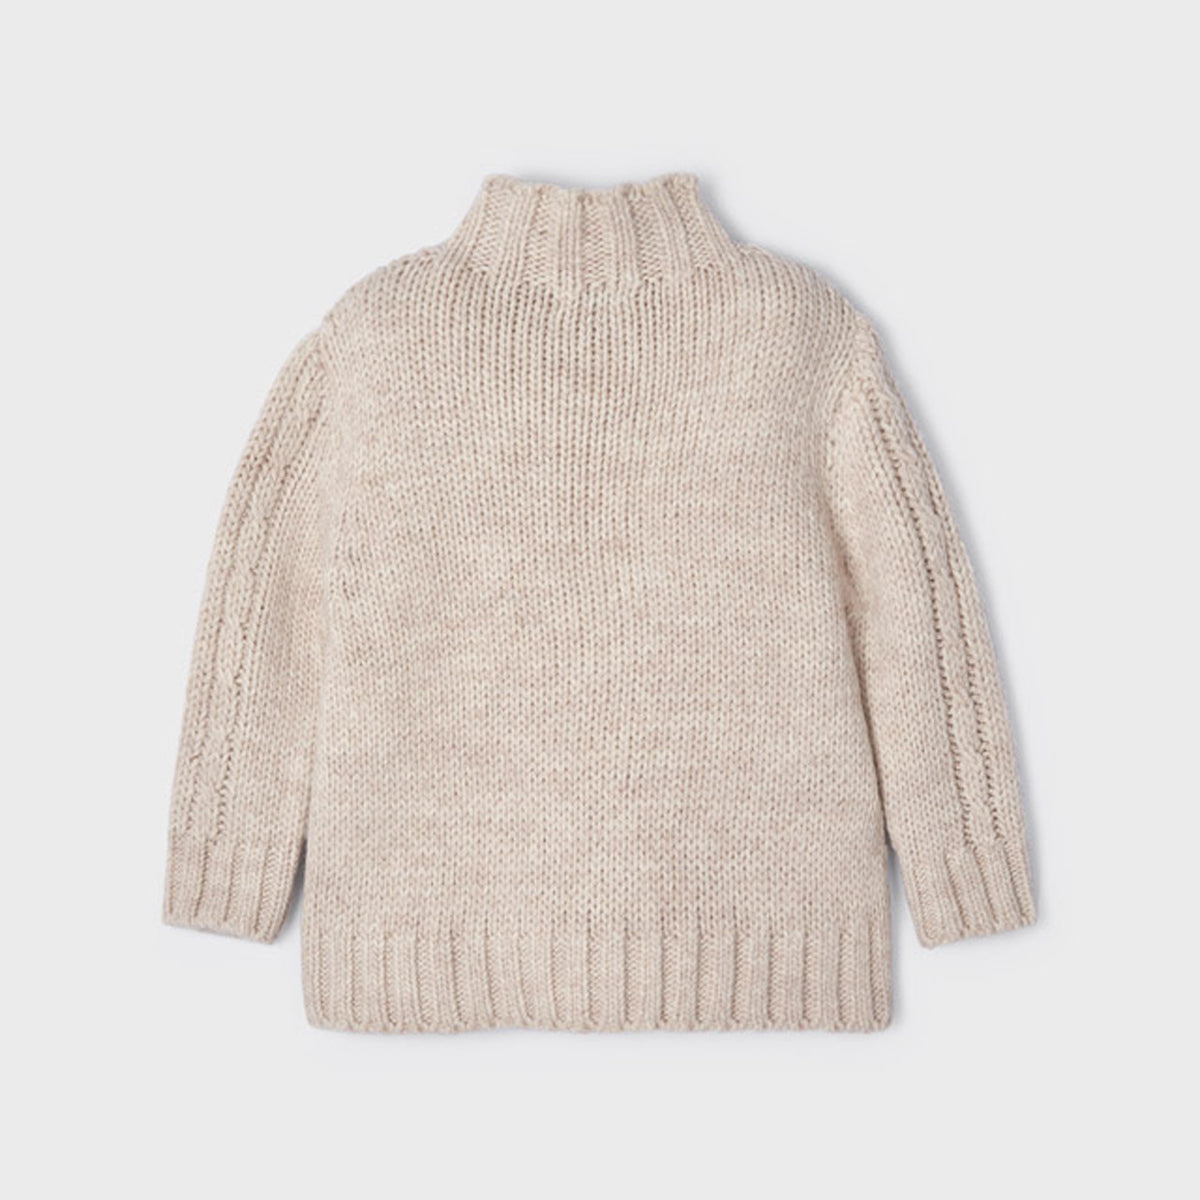 Beige Braided Sweater